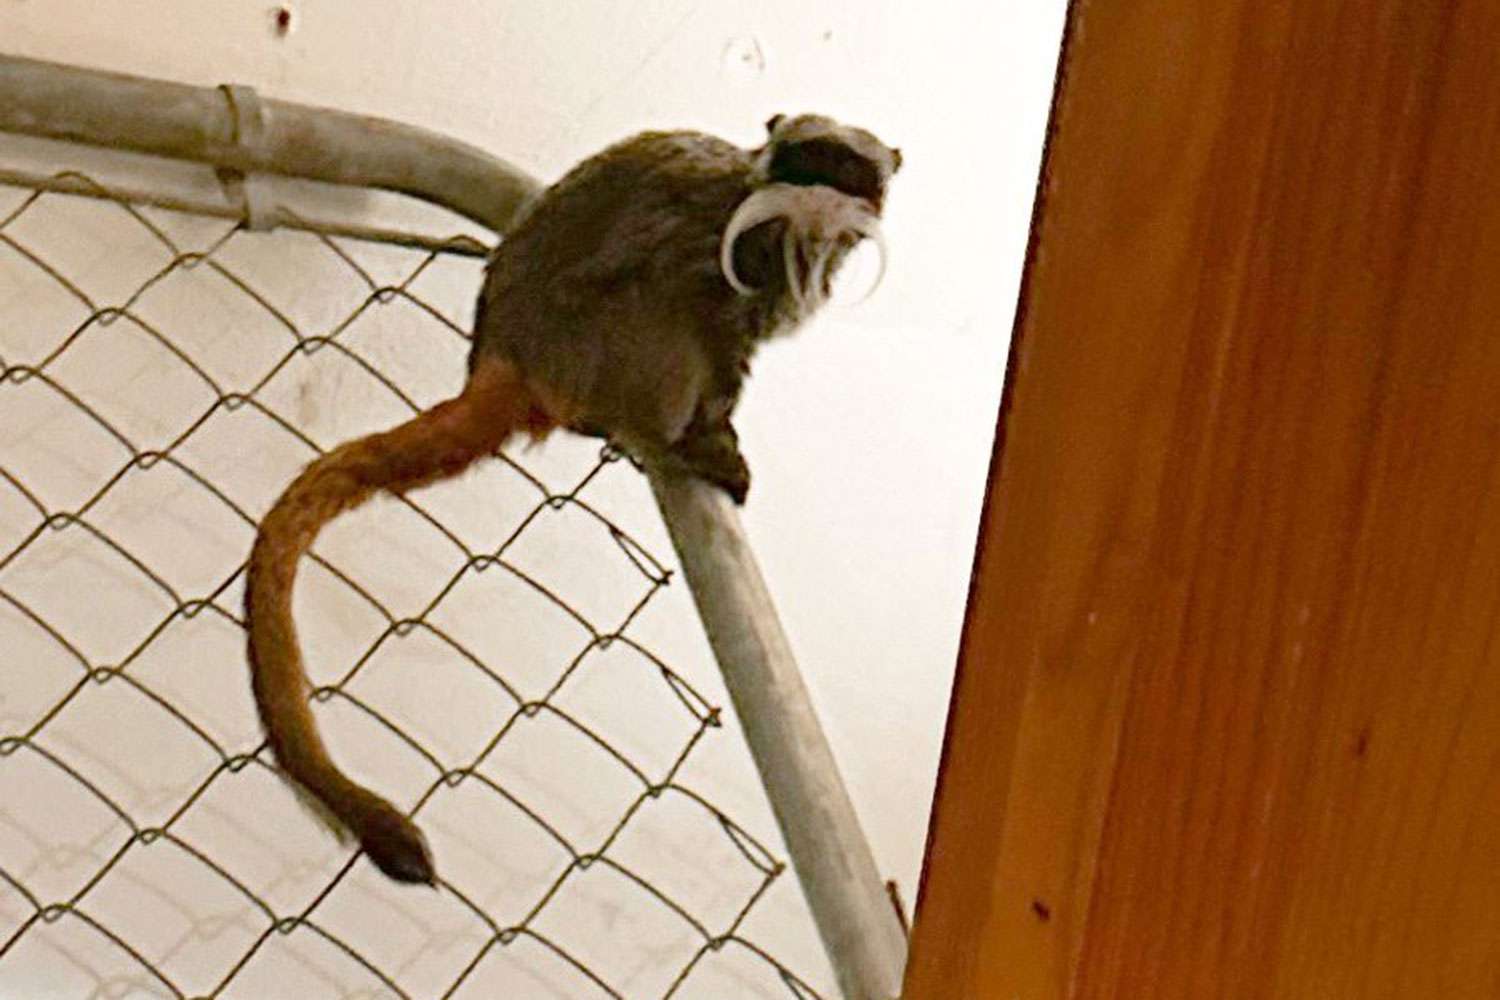 สวนสัตว์ดัลลัสประกาศ 'การเปลี่ยนแปลงสำคัญ' ต่อระบบรักษาความปลอดภัย หลังพบลิงทามารินที่หายไป